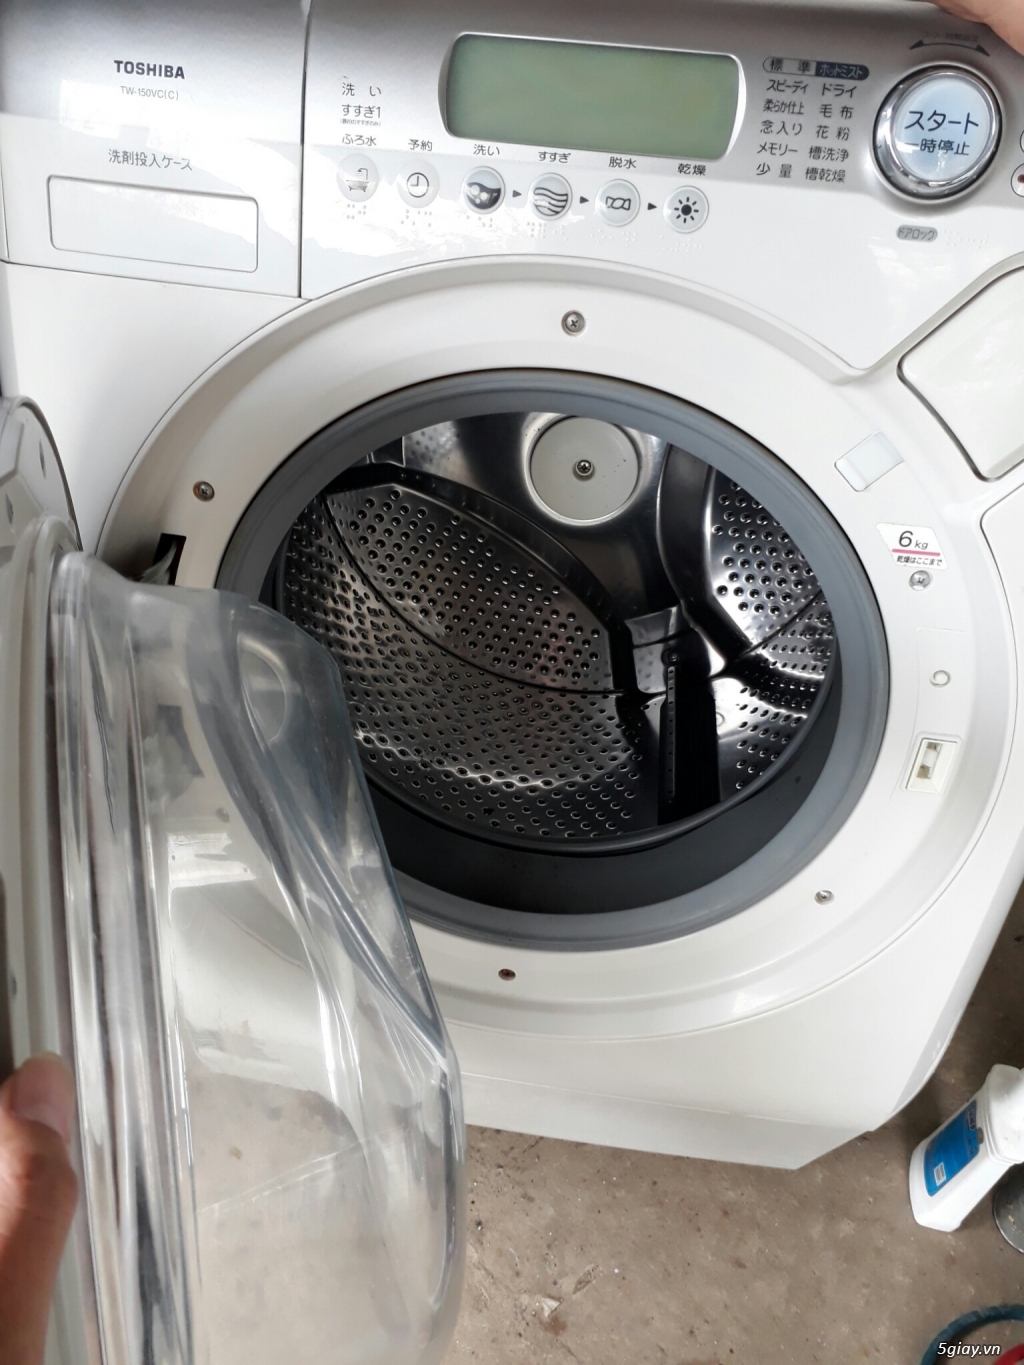 Máy giặt toshiba inverter TW-150VC - Giặt 9kg sấy 6kg. - 3